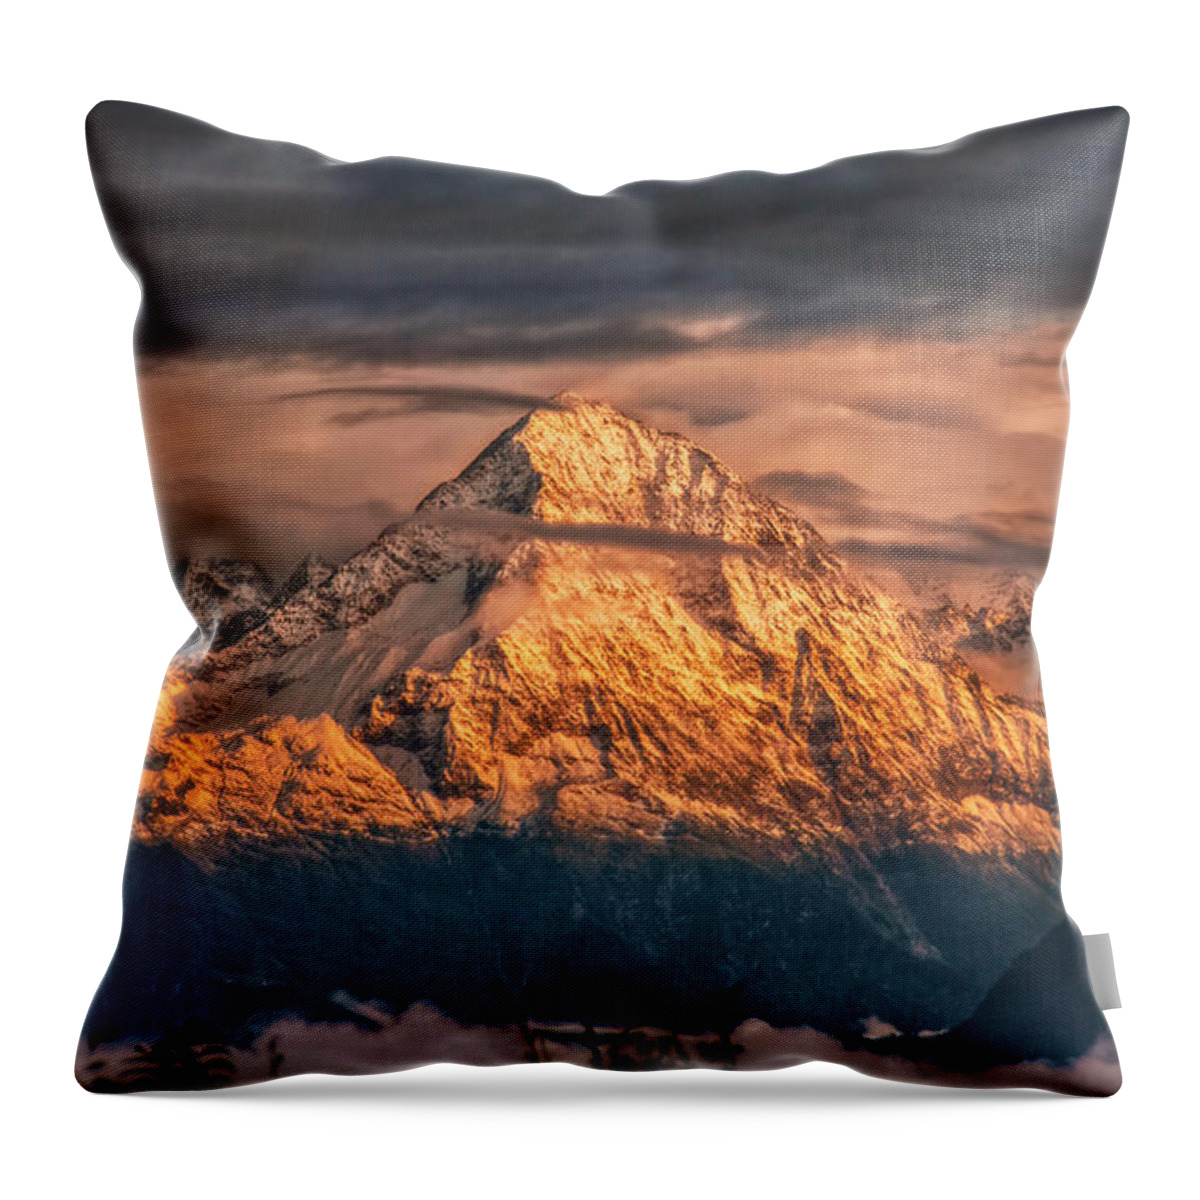 Switzerland Throw Pillow featuring the photograph Golden Evening Sun by Hanny Heim